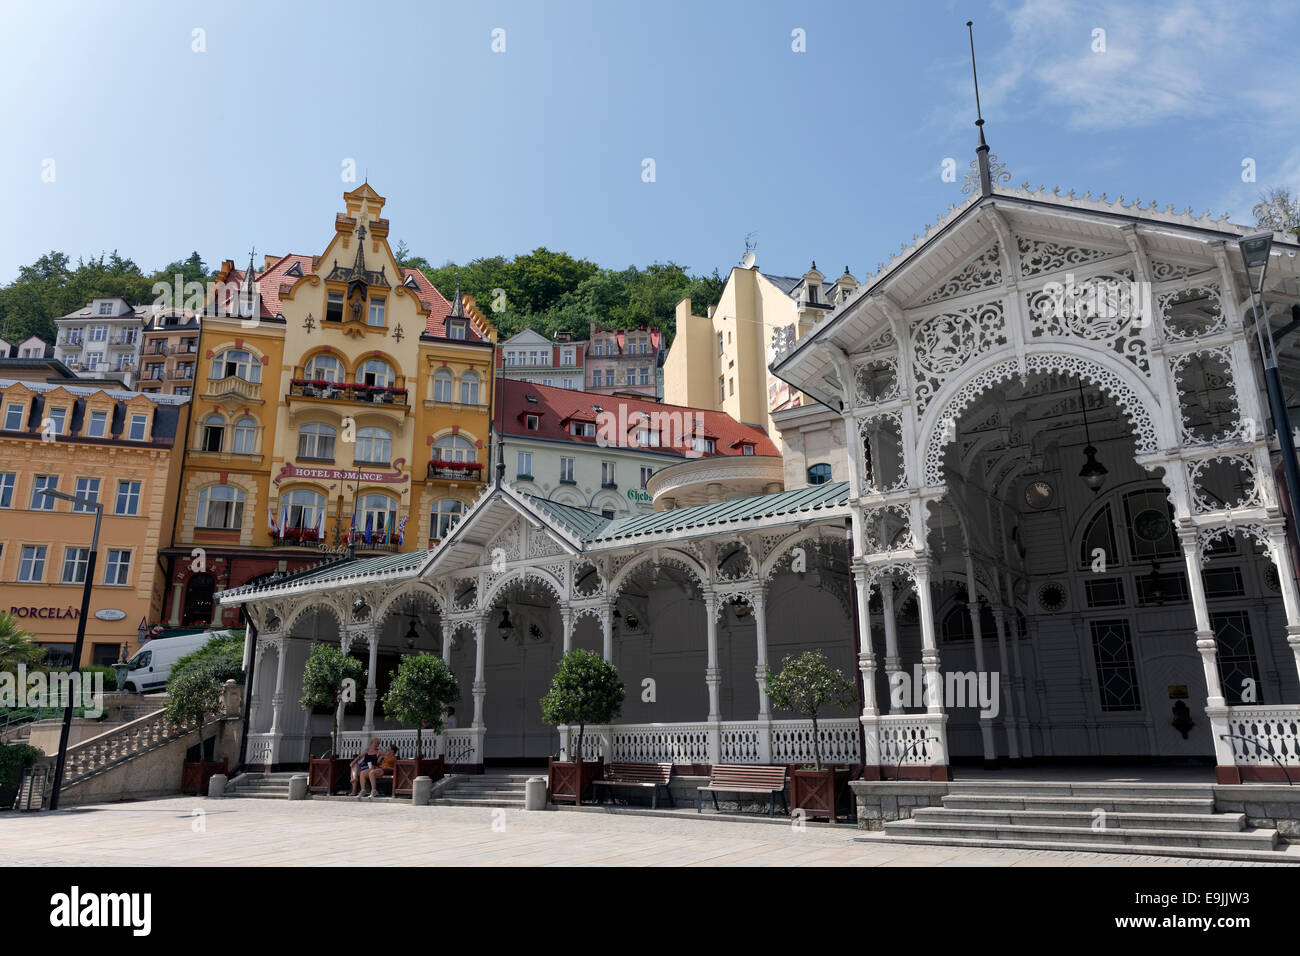 Storico gazebo in legno, mercato colonnato a molla, Karlovy Vary, Regione di Karlovy Vary, Bohemia Repubblica Ceca Foto Stock